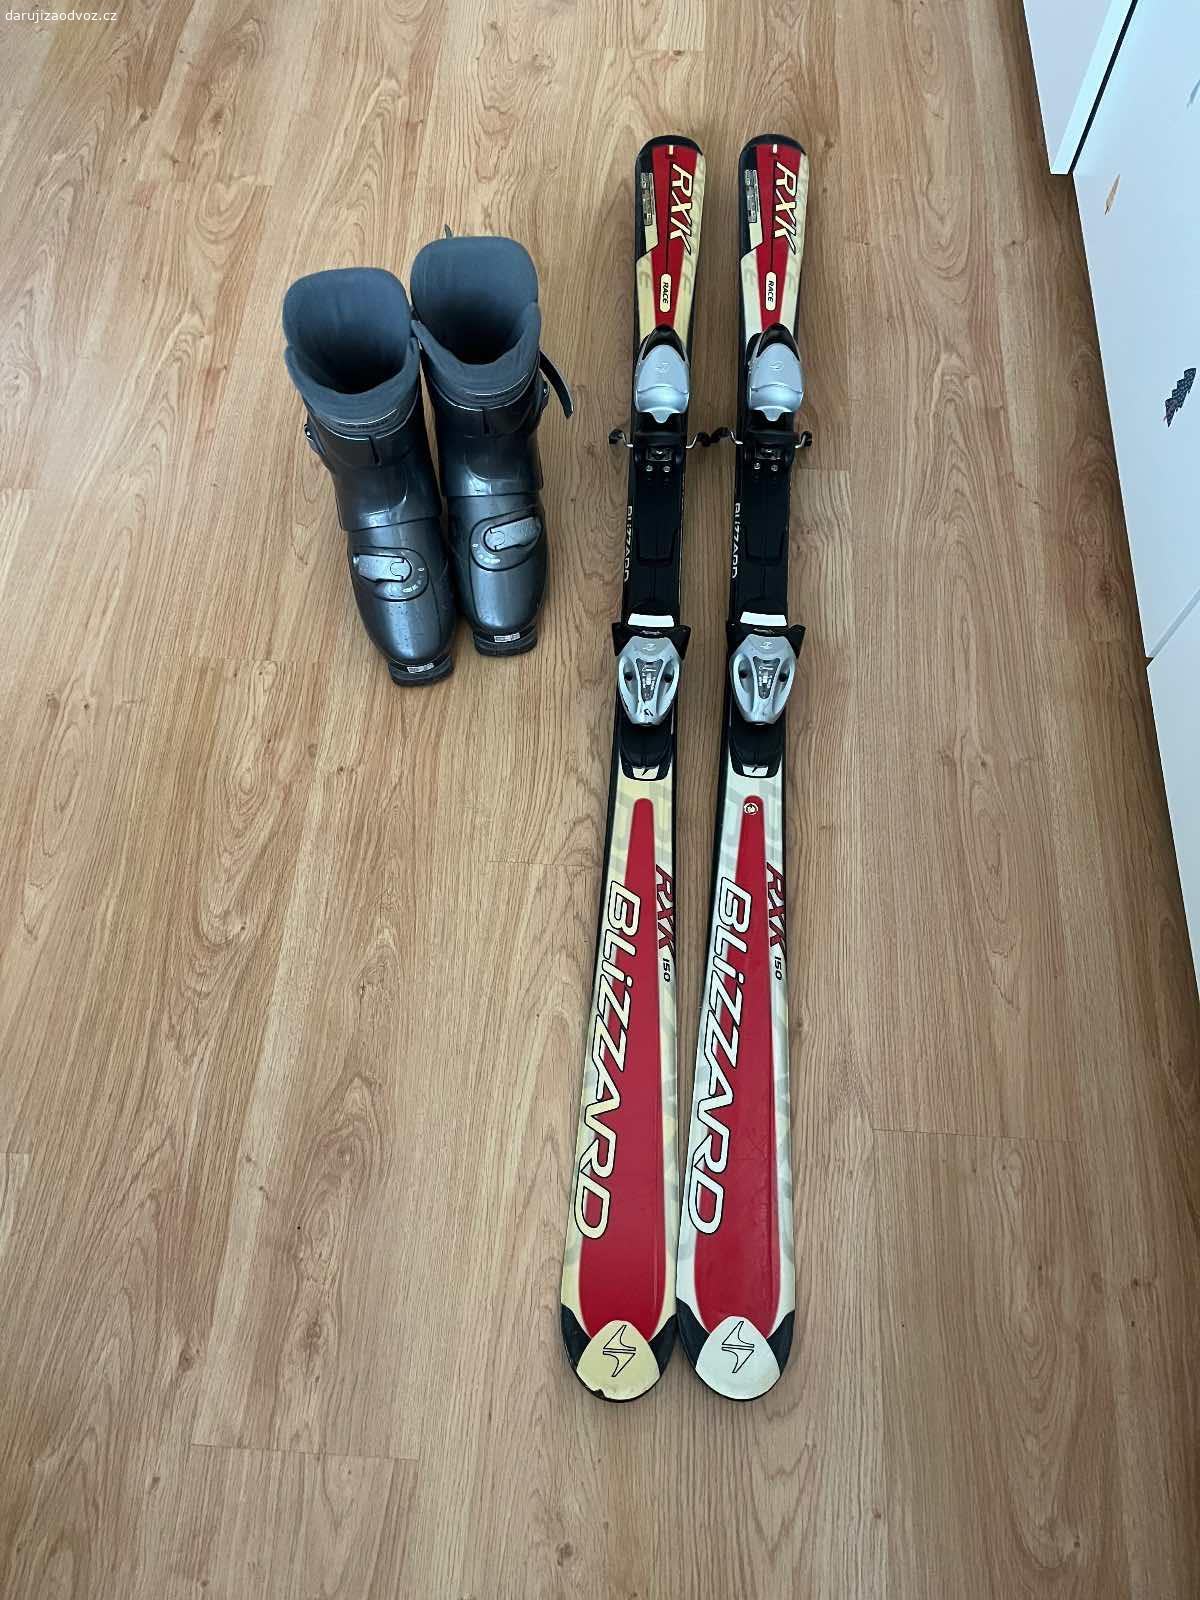 Daruji lyže. Daruji sjezdové lyže výšky 150 cm, včetně vázání a bot, které odpovídají velikosti 39.